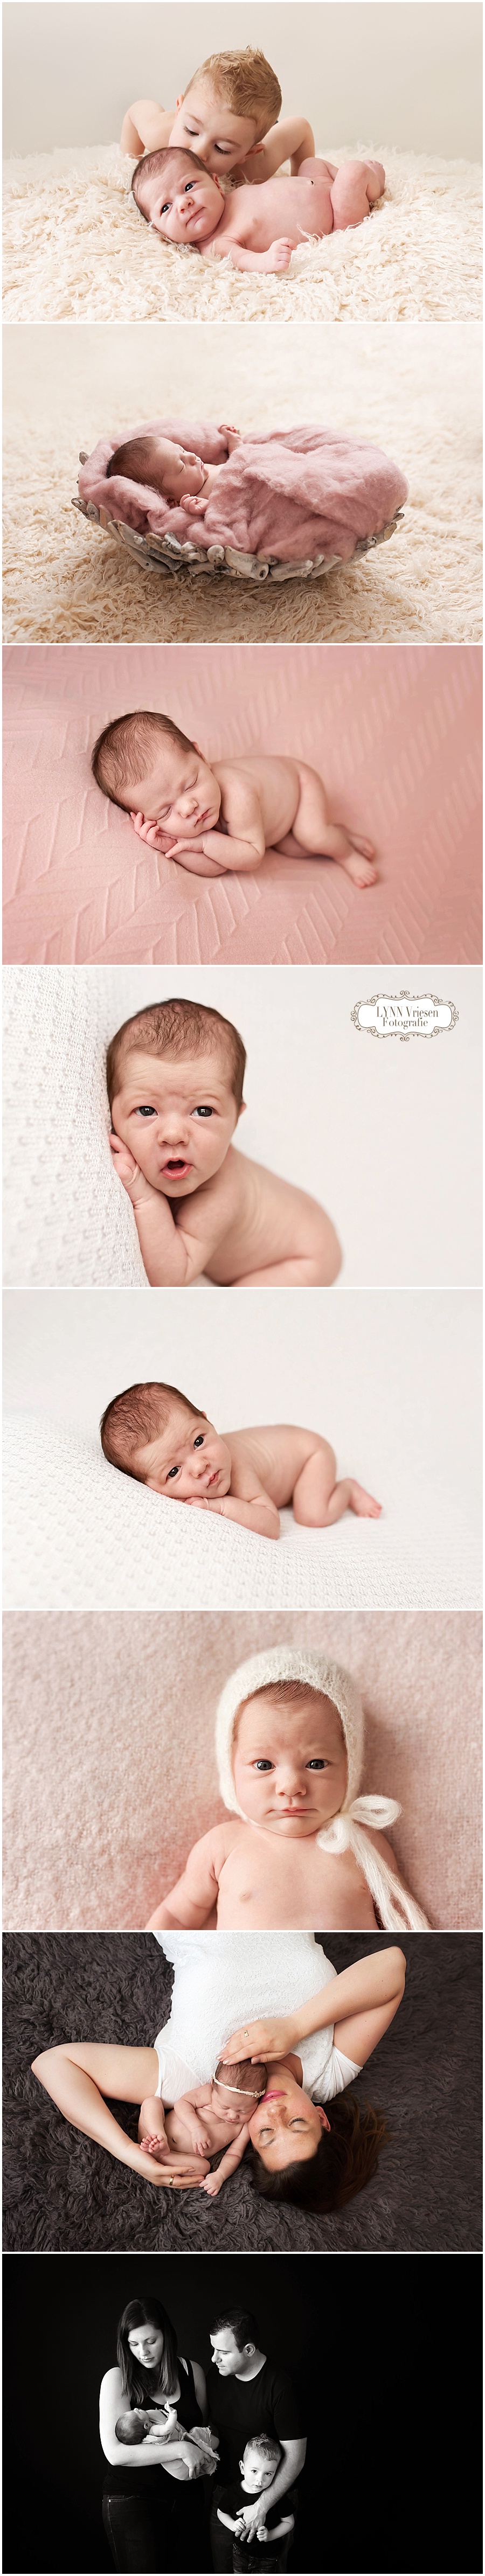 Noa 19 dagen jong - Newborn fotograaf Wijchen